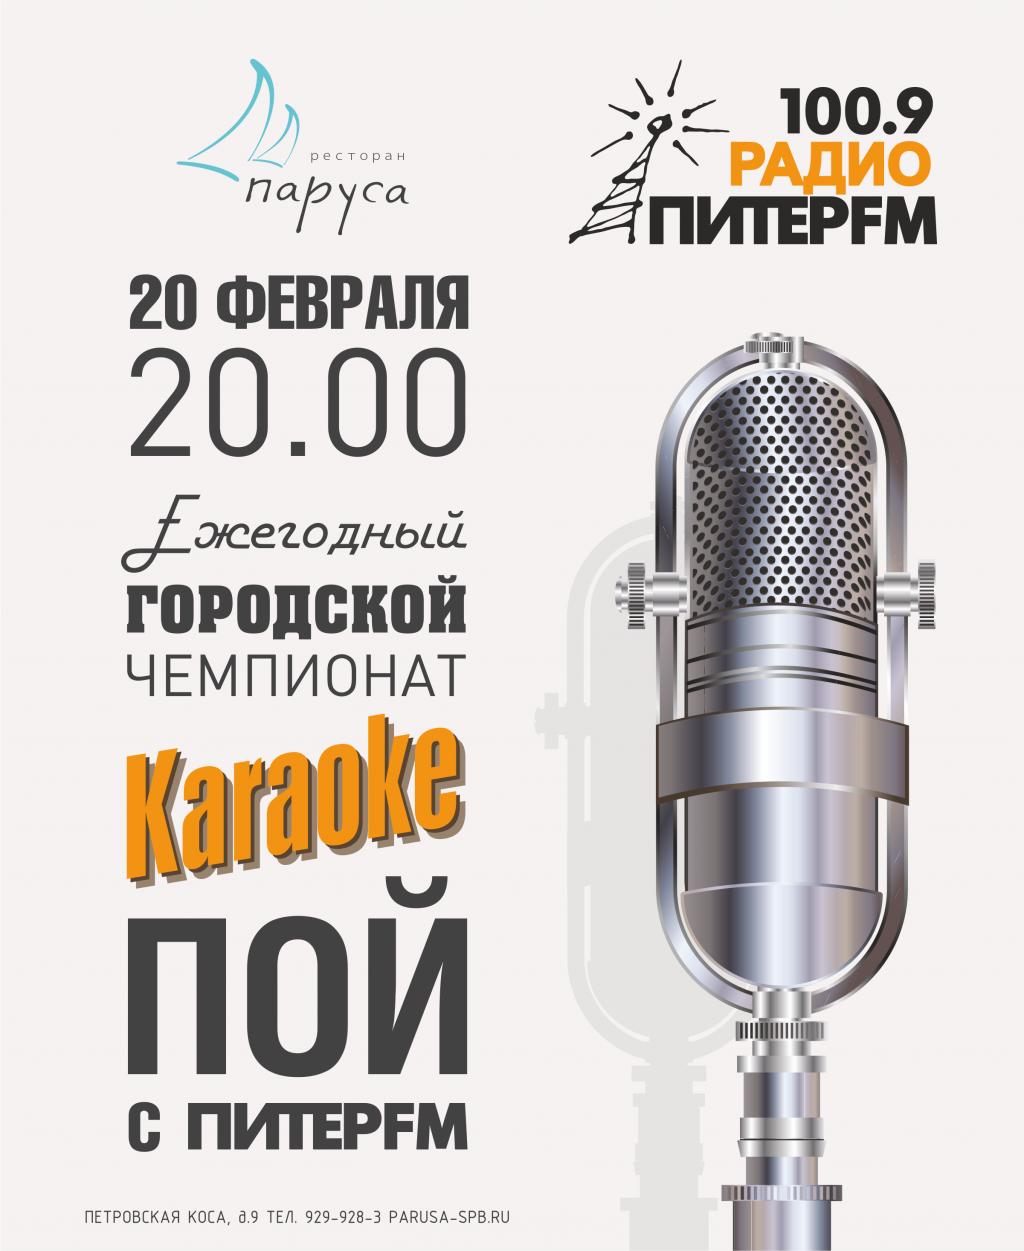 Ежегодный городской чемпионат караоке «Пой с «Питер FM» в ресторане «Паруса»